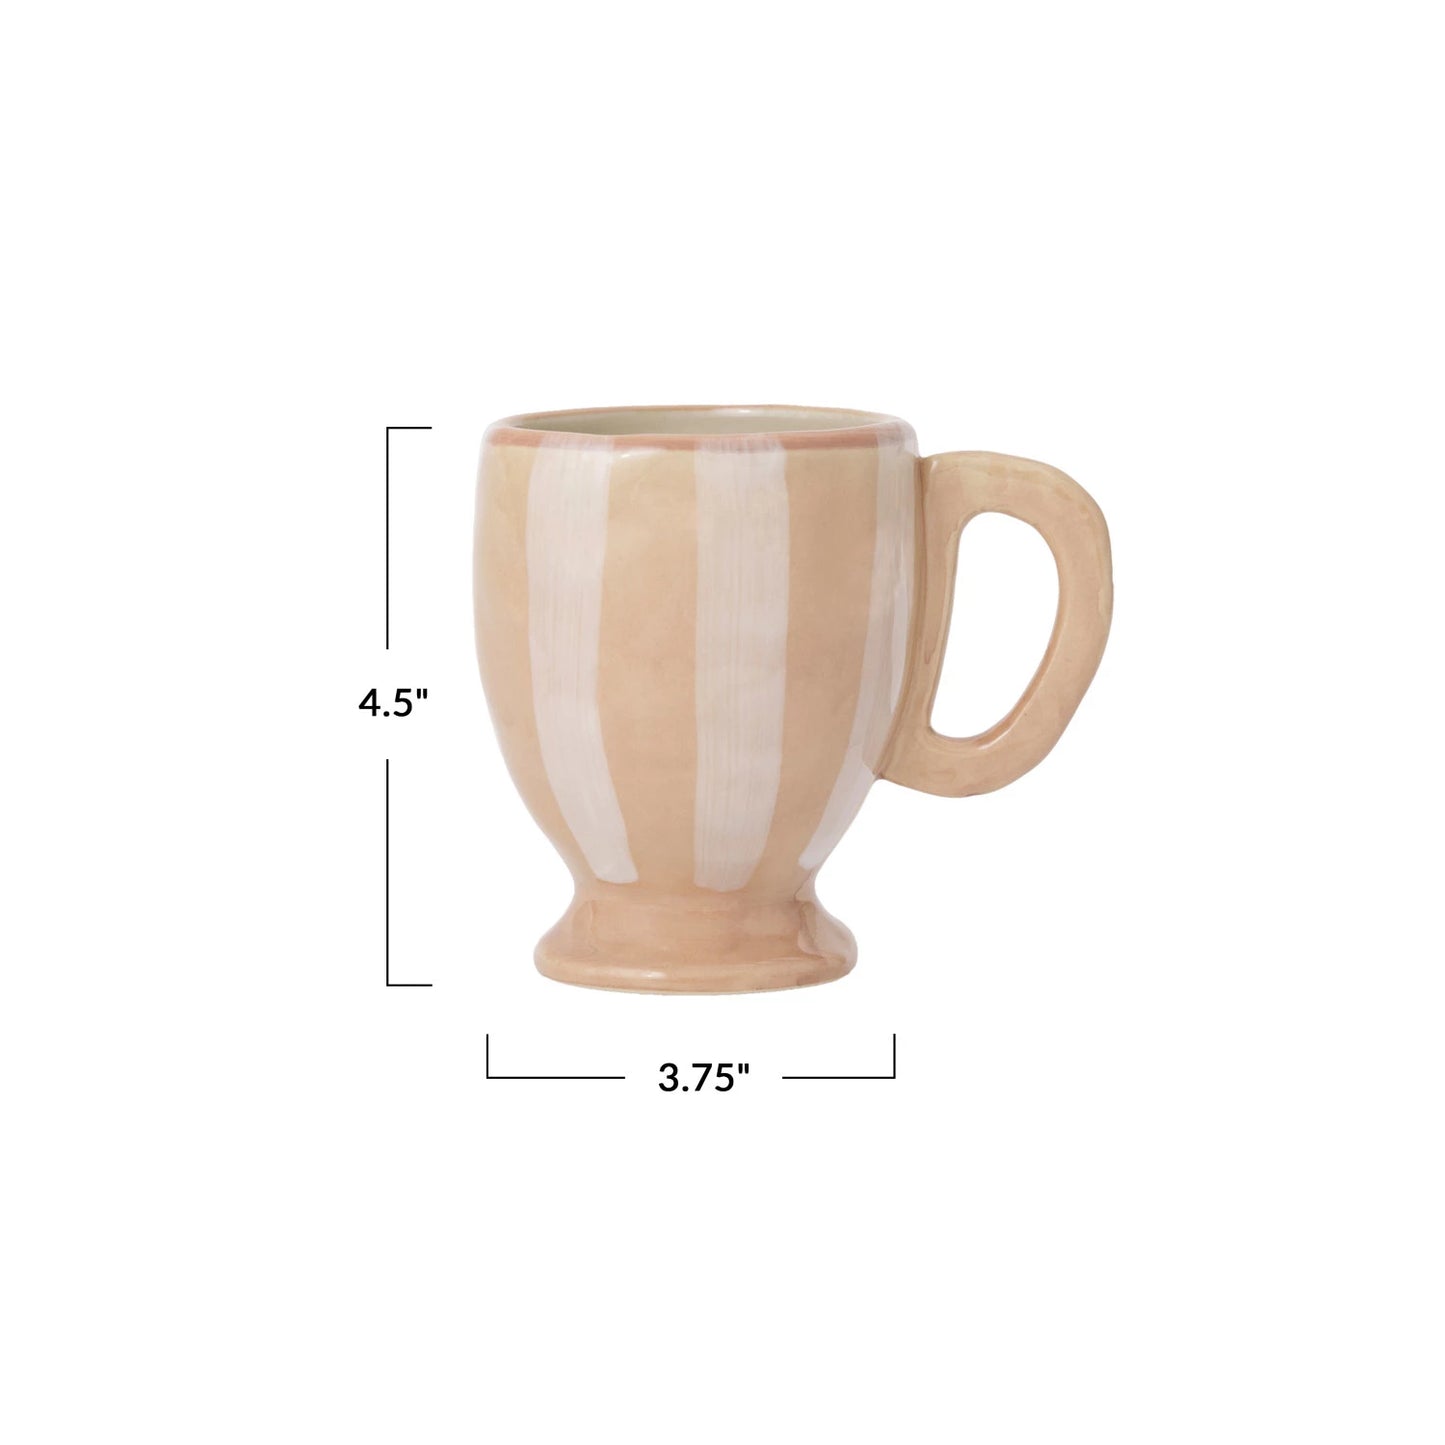 14oz striped mug - cream and white